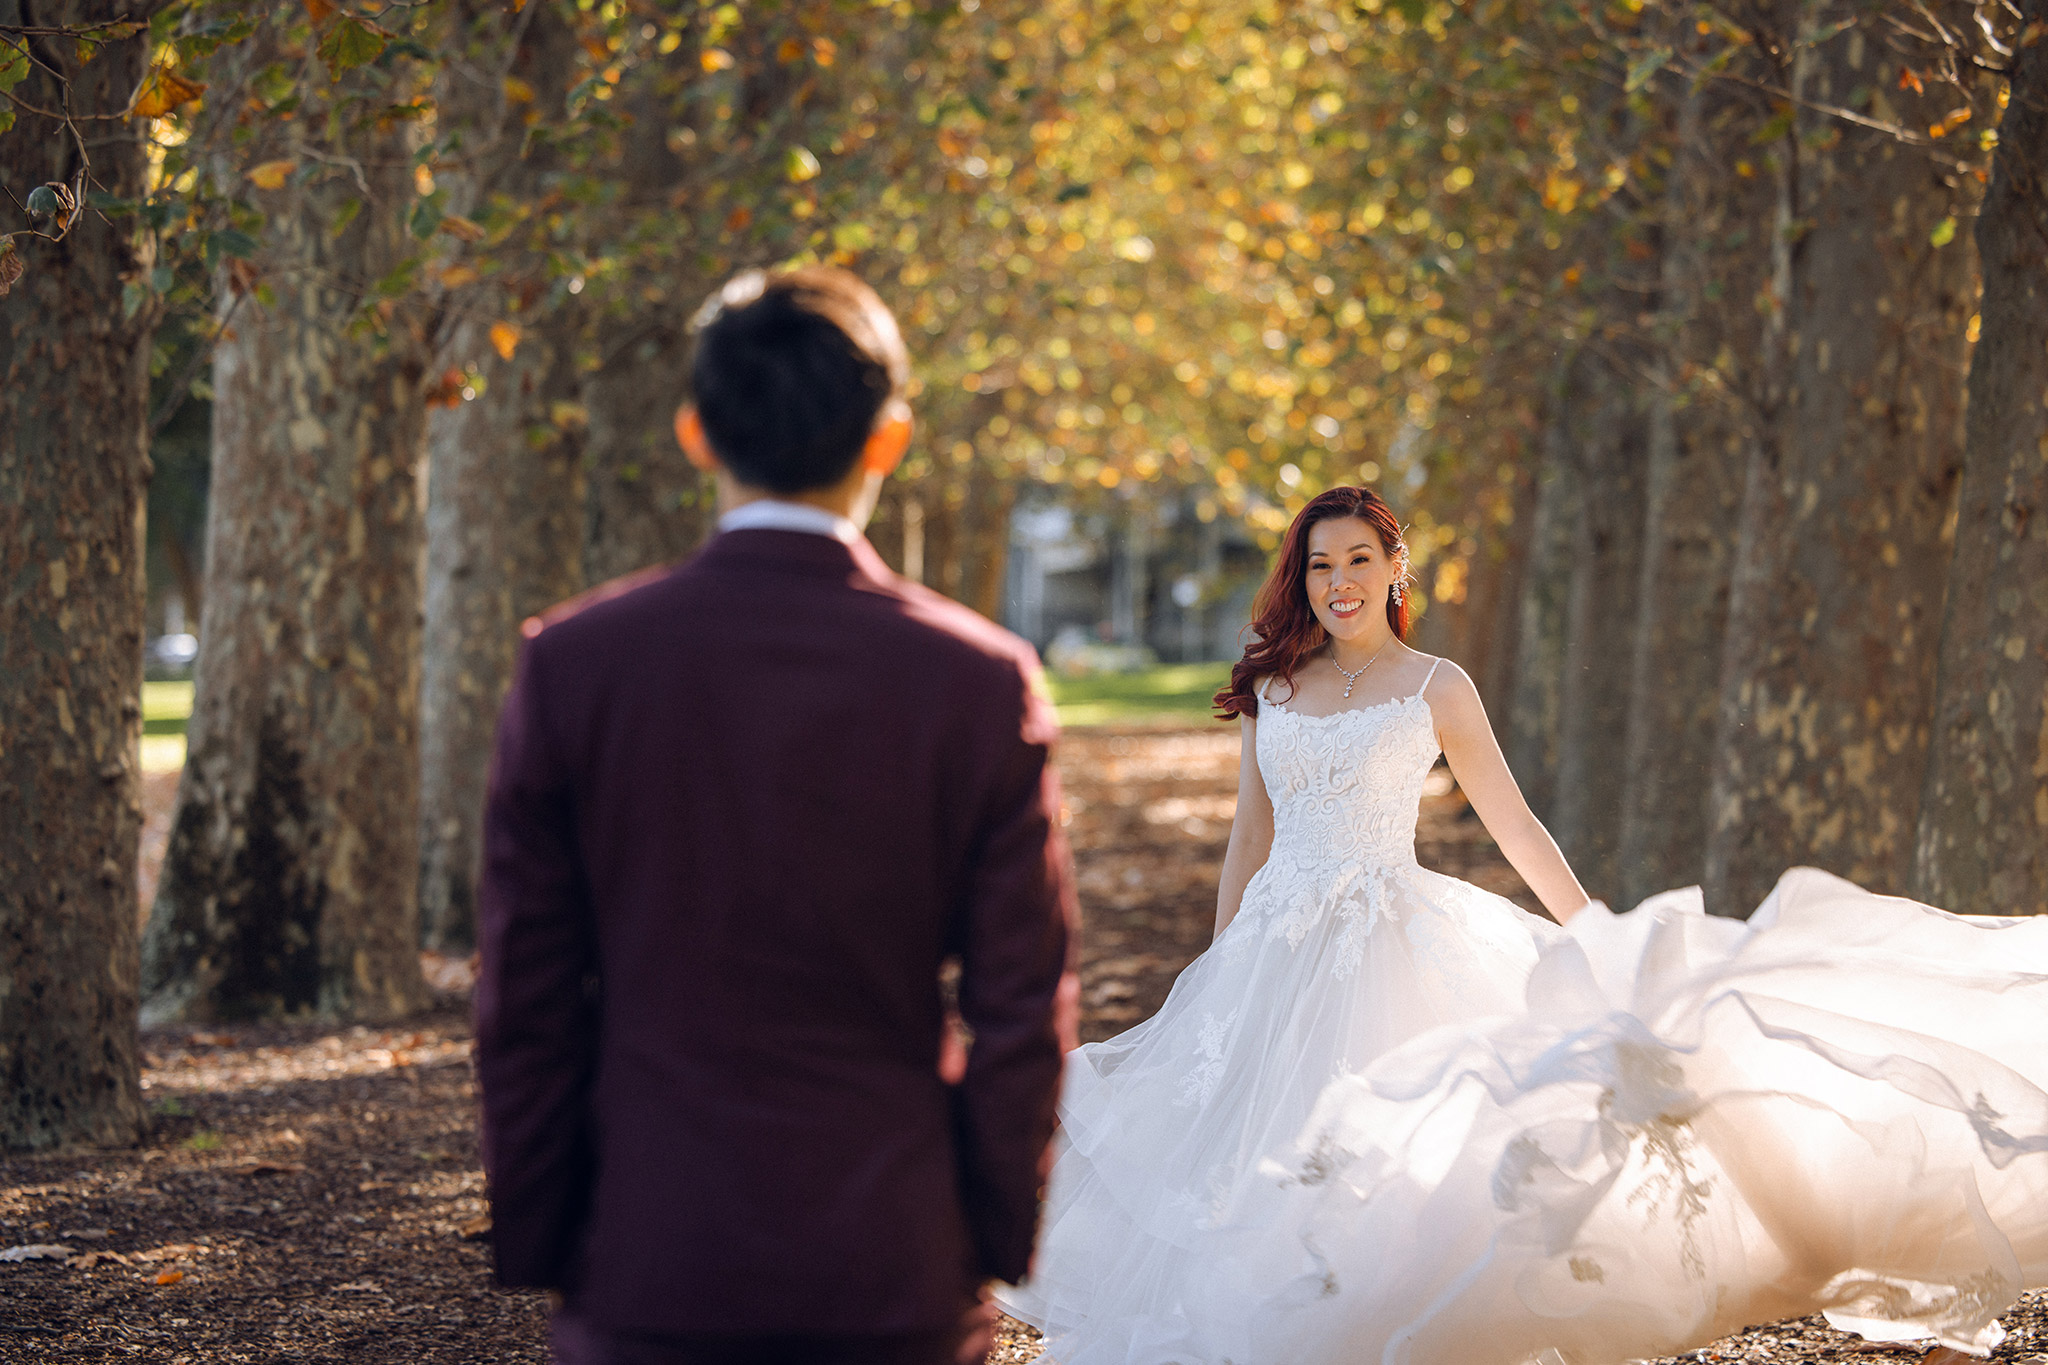 Melbourne Pre-Wedding Photoshoot at Alpaca Farm, Fitzroy Gardens & Brighton Beach by Freddie on OneThreeOneFour 14